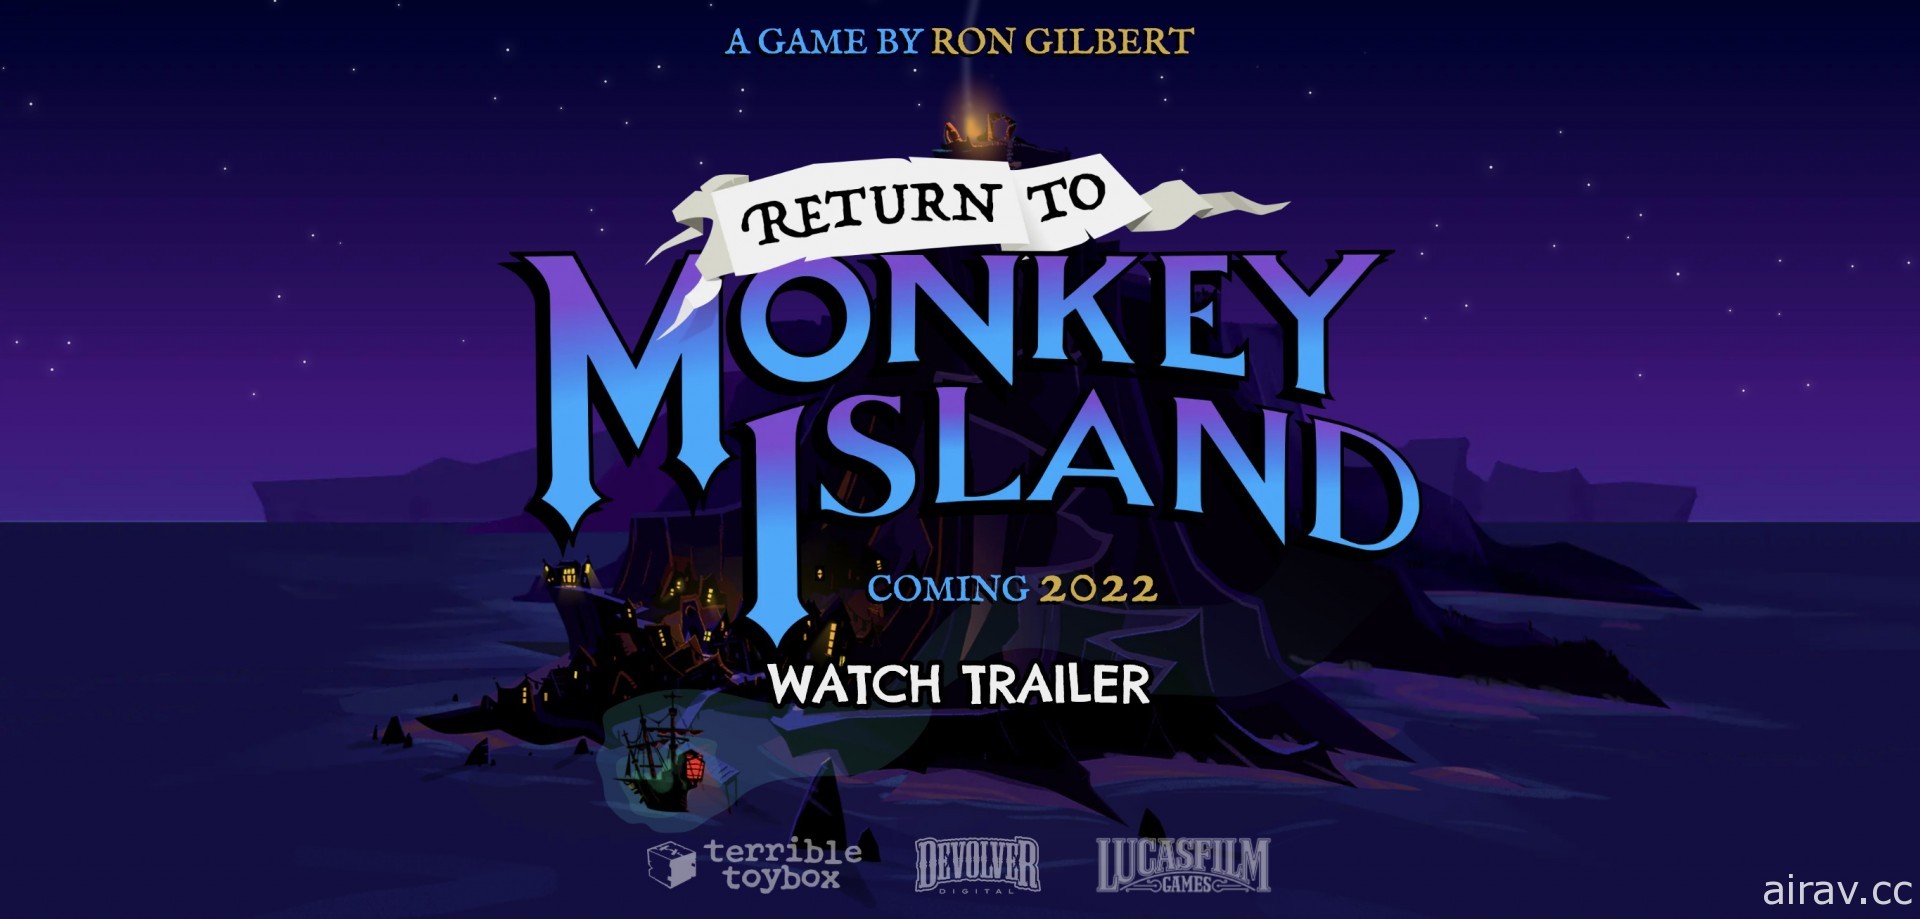 《猴島小英雄》系列最新作《重返猴島》曝光 預計 2022 年發行